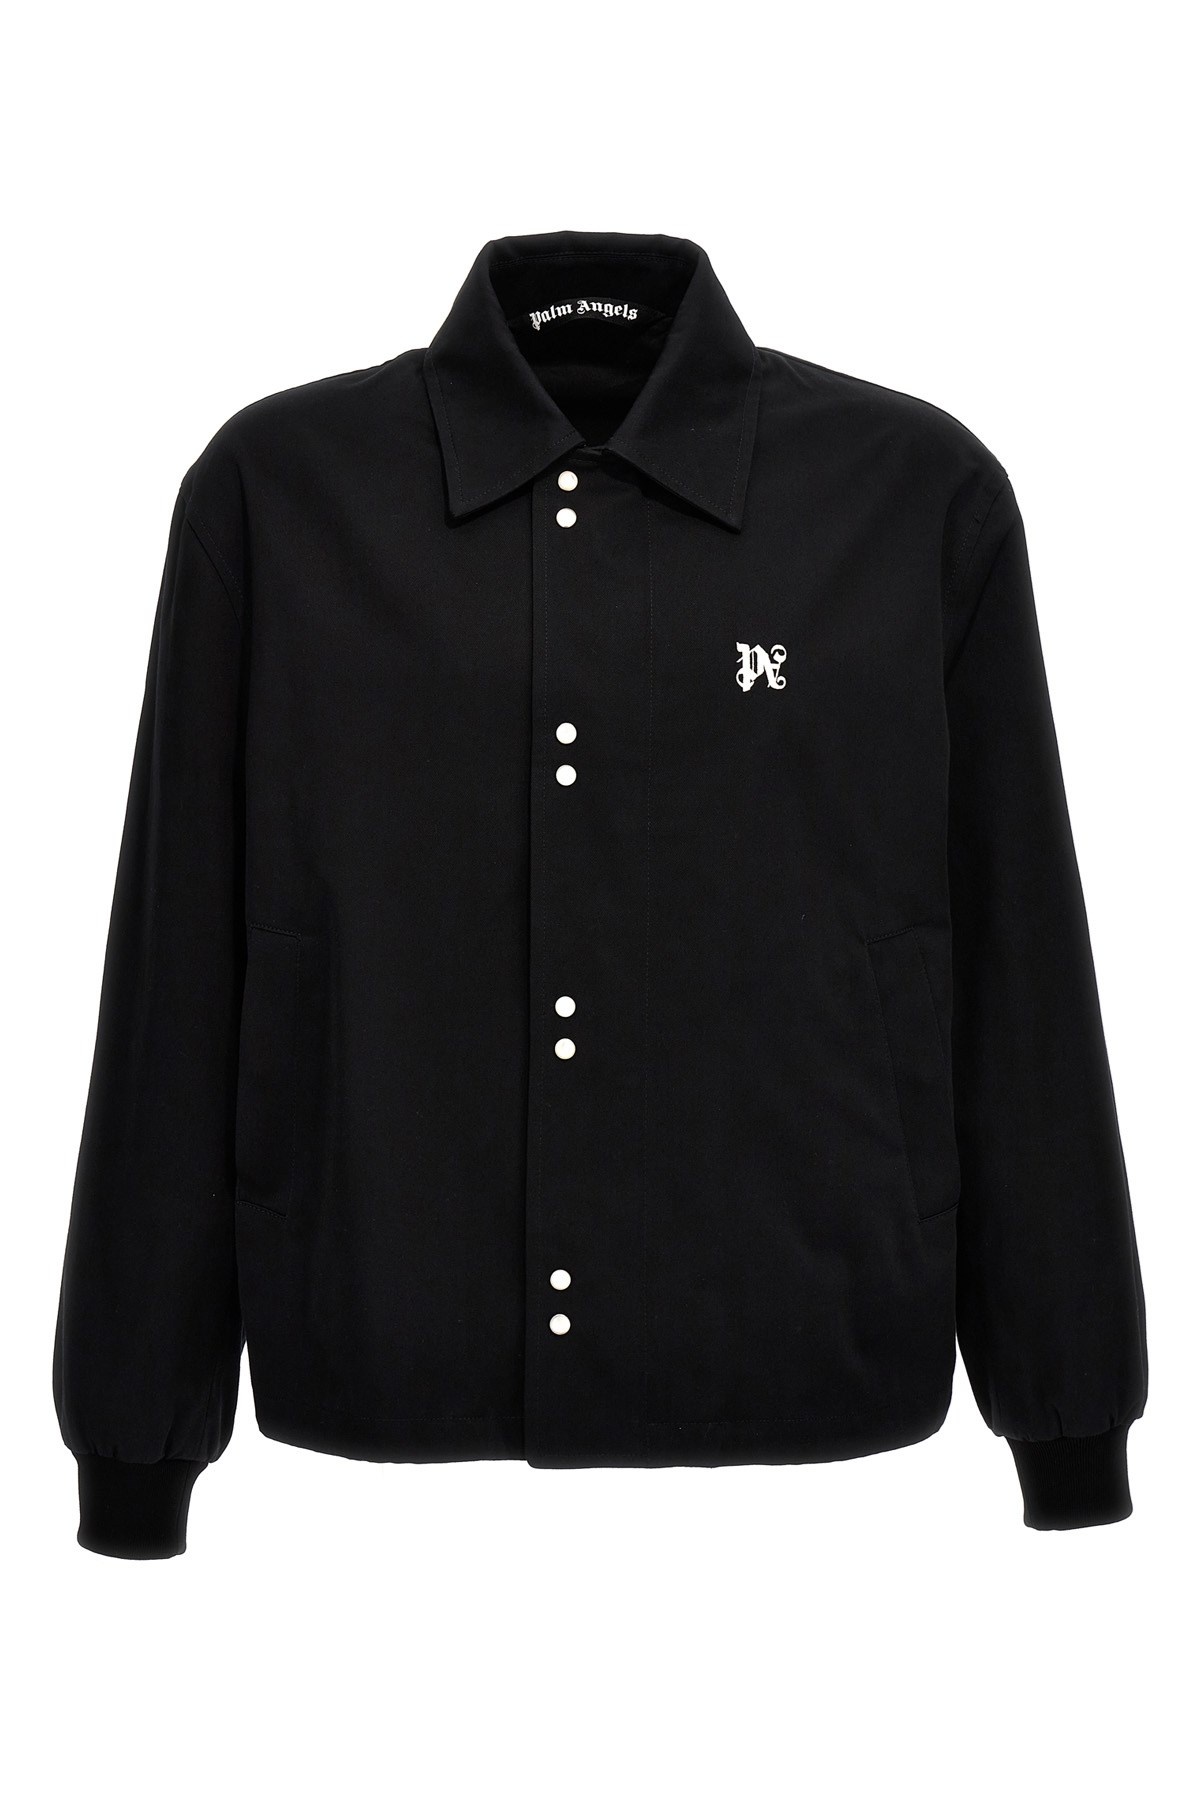 'Monogram Coach' jacket - 1